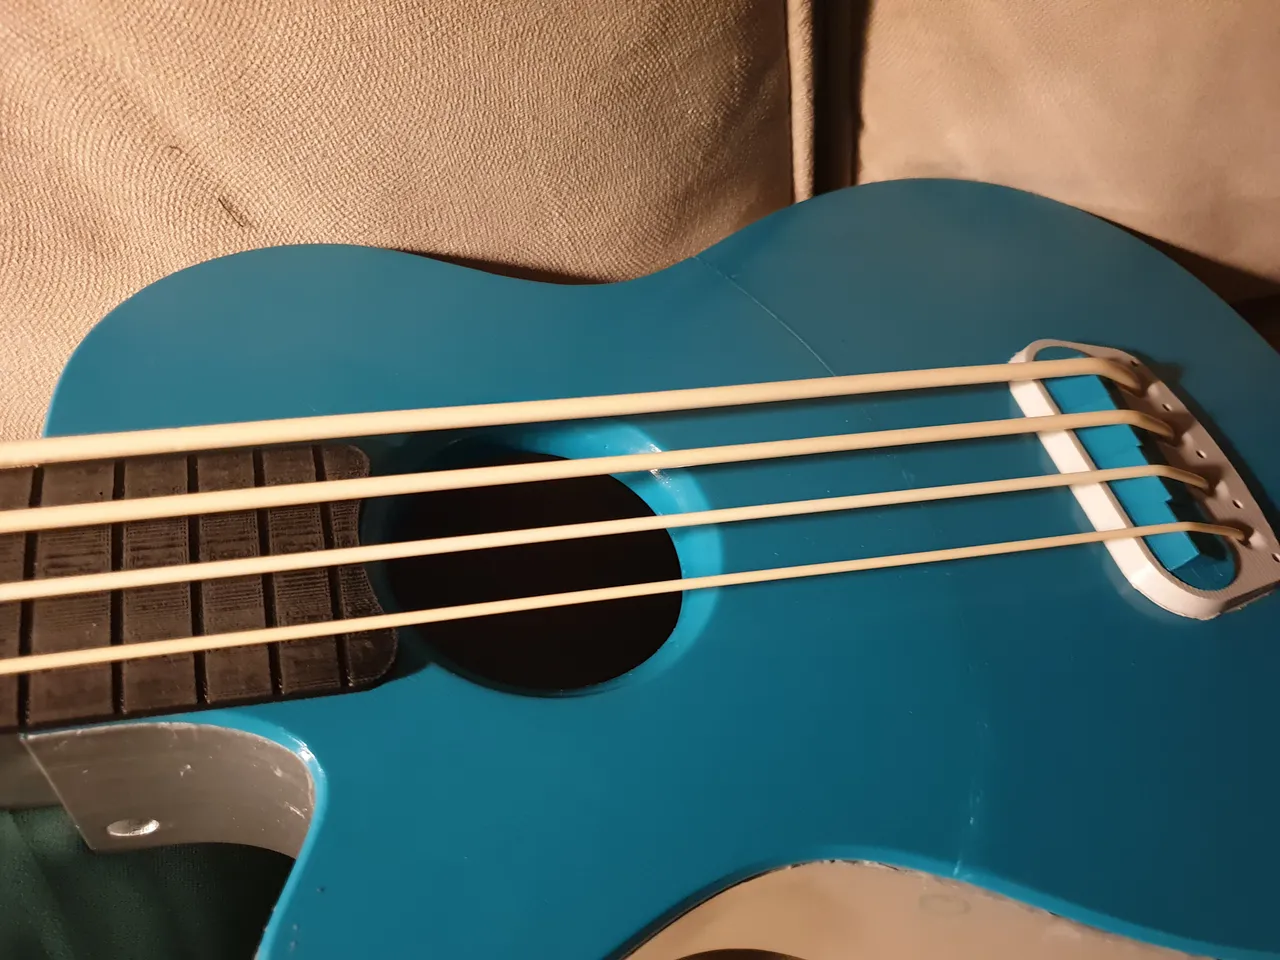 Uookulele - bass ukulele by Tomek | Download free STL model | Printables.com